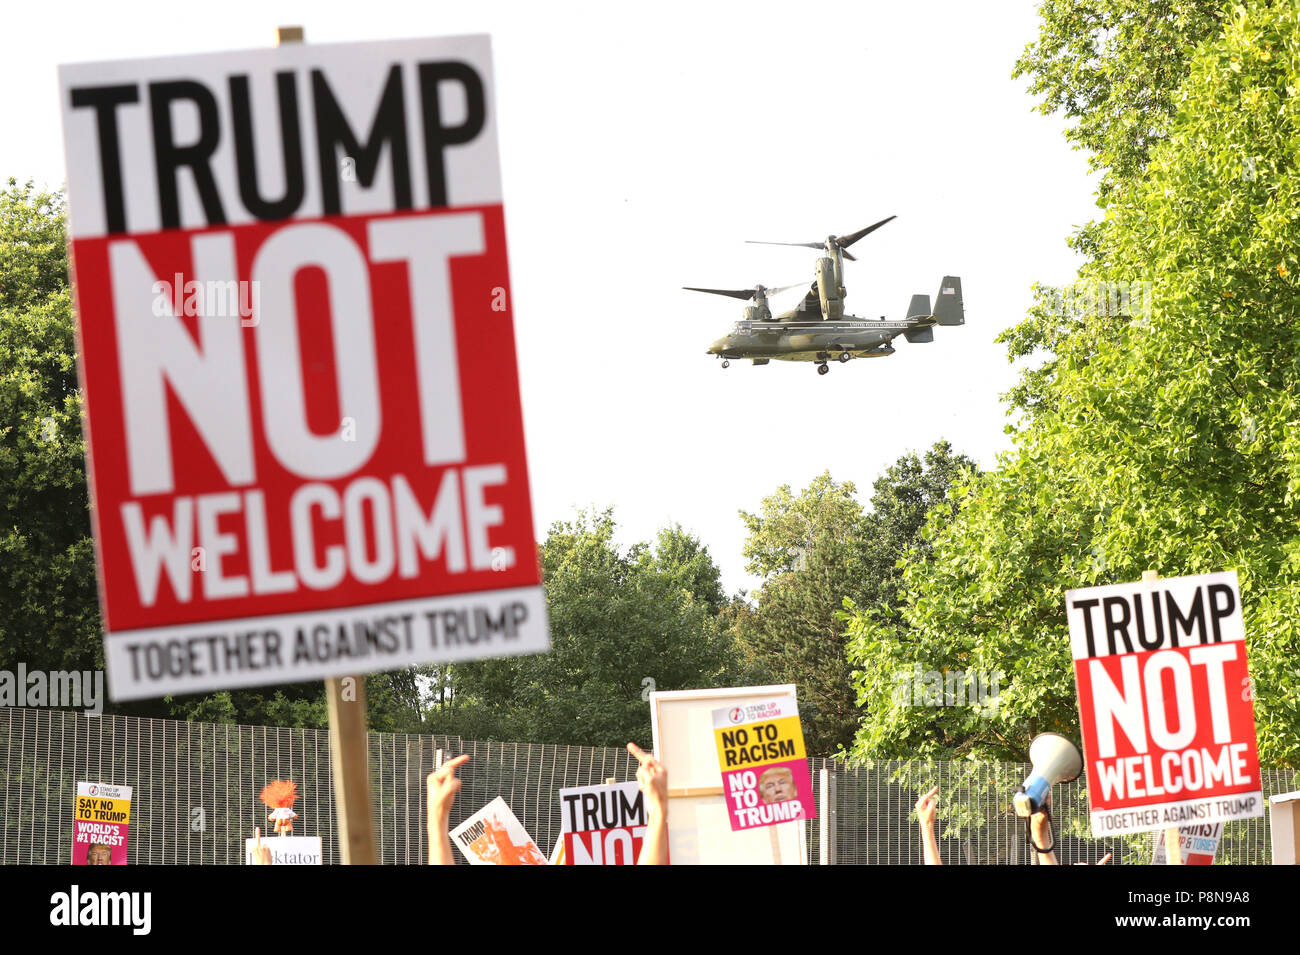 Ein US-Präsidentschaftswahl Hubschrauber verlässt das Gelände der US-Botschafter in Regent's Park, London, während die Demonstranten als Teil der Proteste gegen den Besuch von US-Präsident Donald Trump in Großbritannien sammeln. Stockfoto